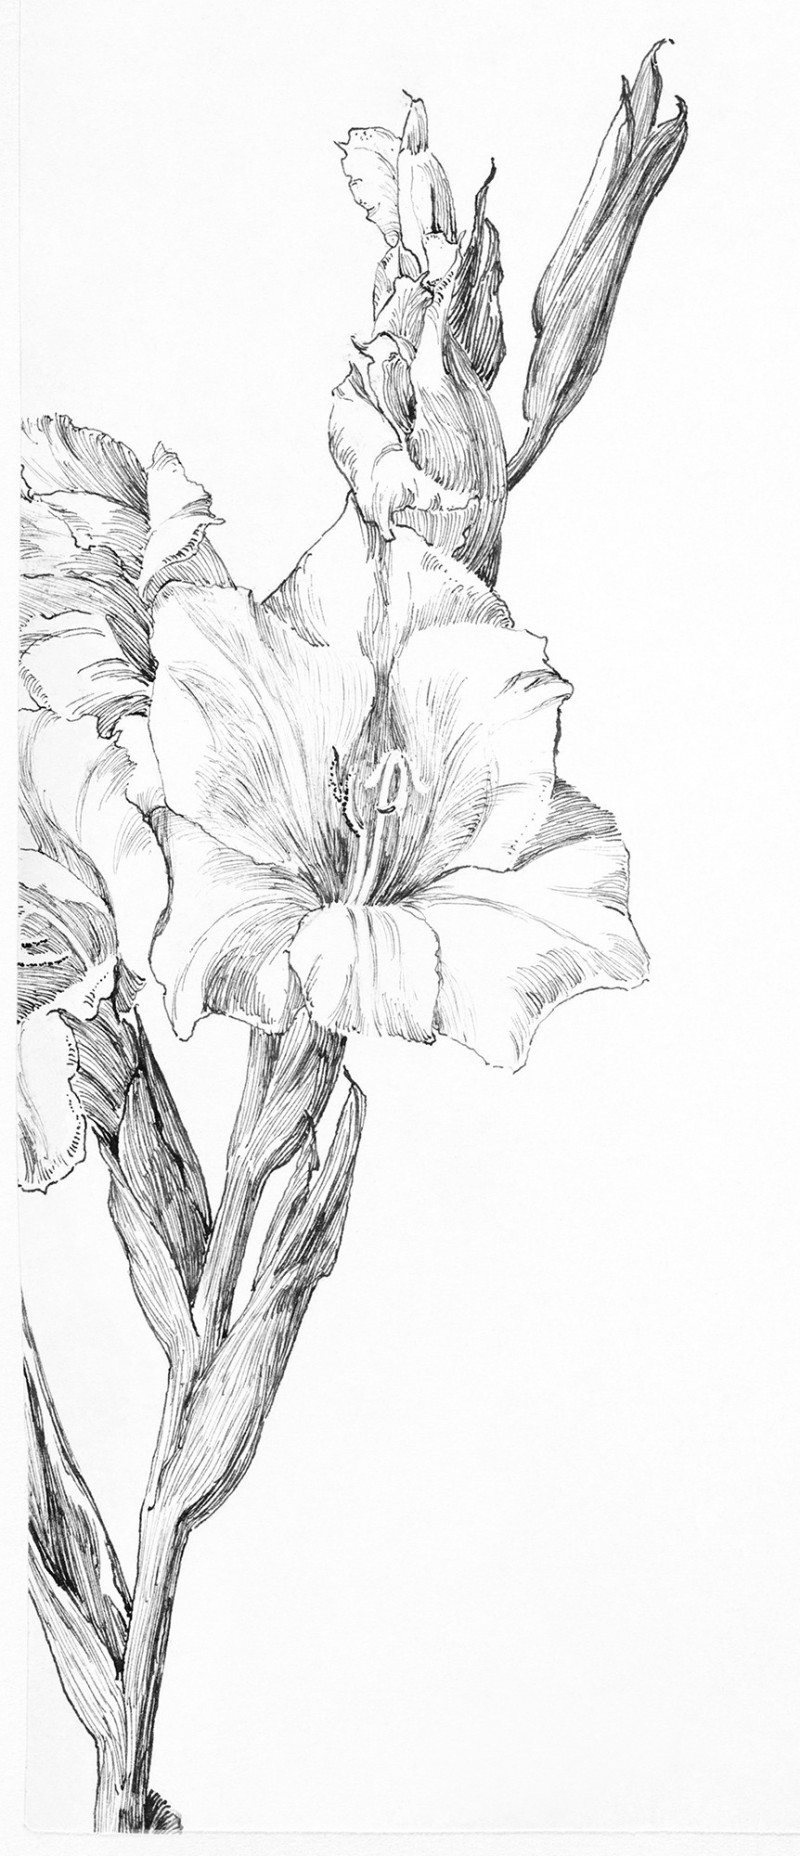 Gladiolus giclee print by Julie de Graag